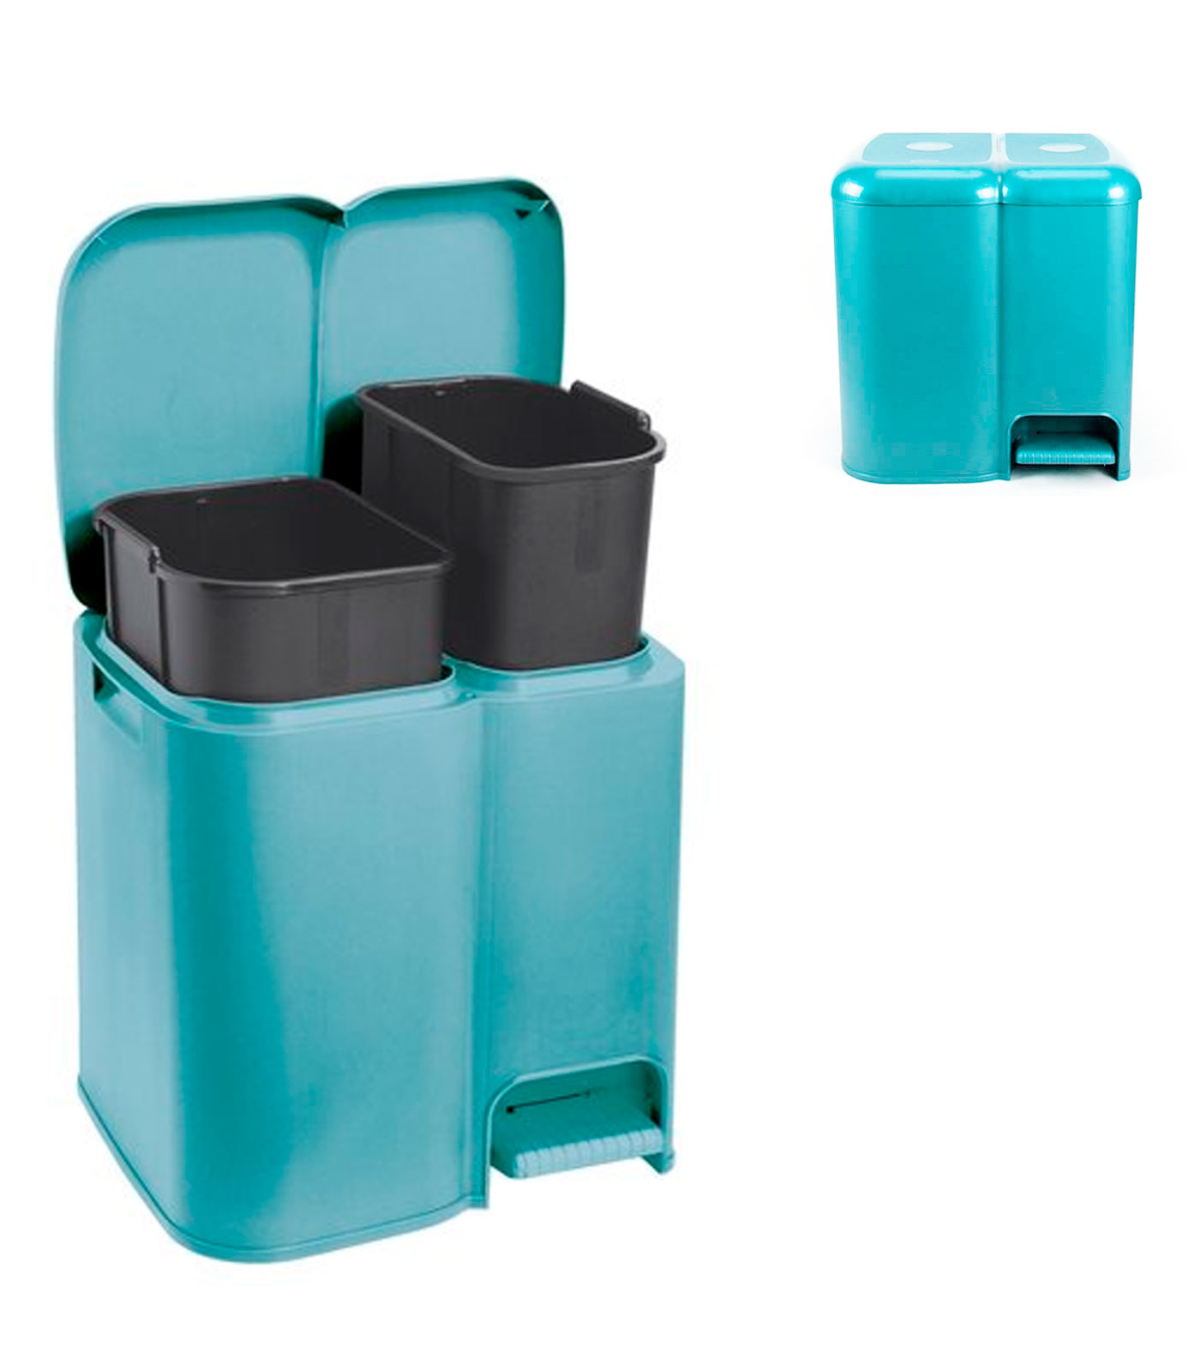 Cubo reciclaje armario, Contenedor basura doble, Separador basura